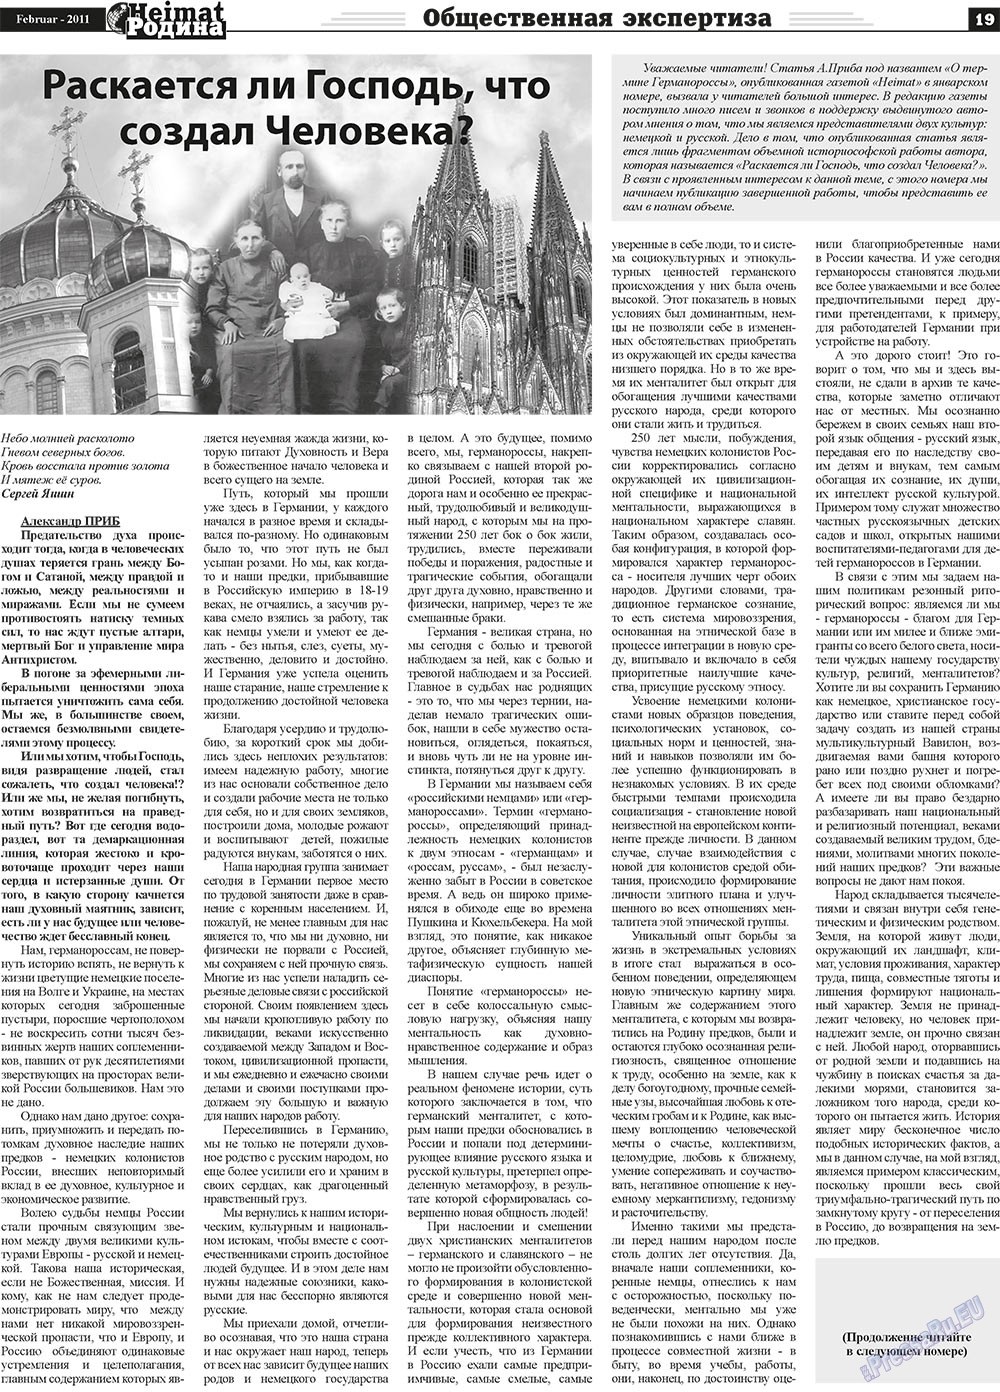 Heimat-Родина (Zeitung). 2011 Jahr, Ausgabe 2, Seite 19